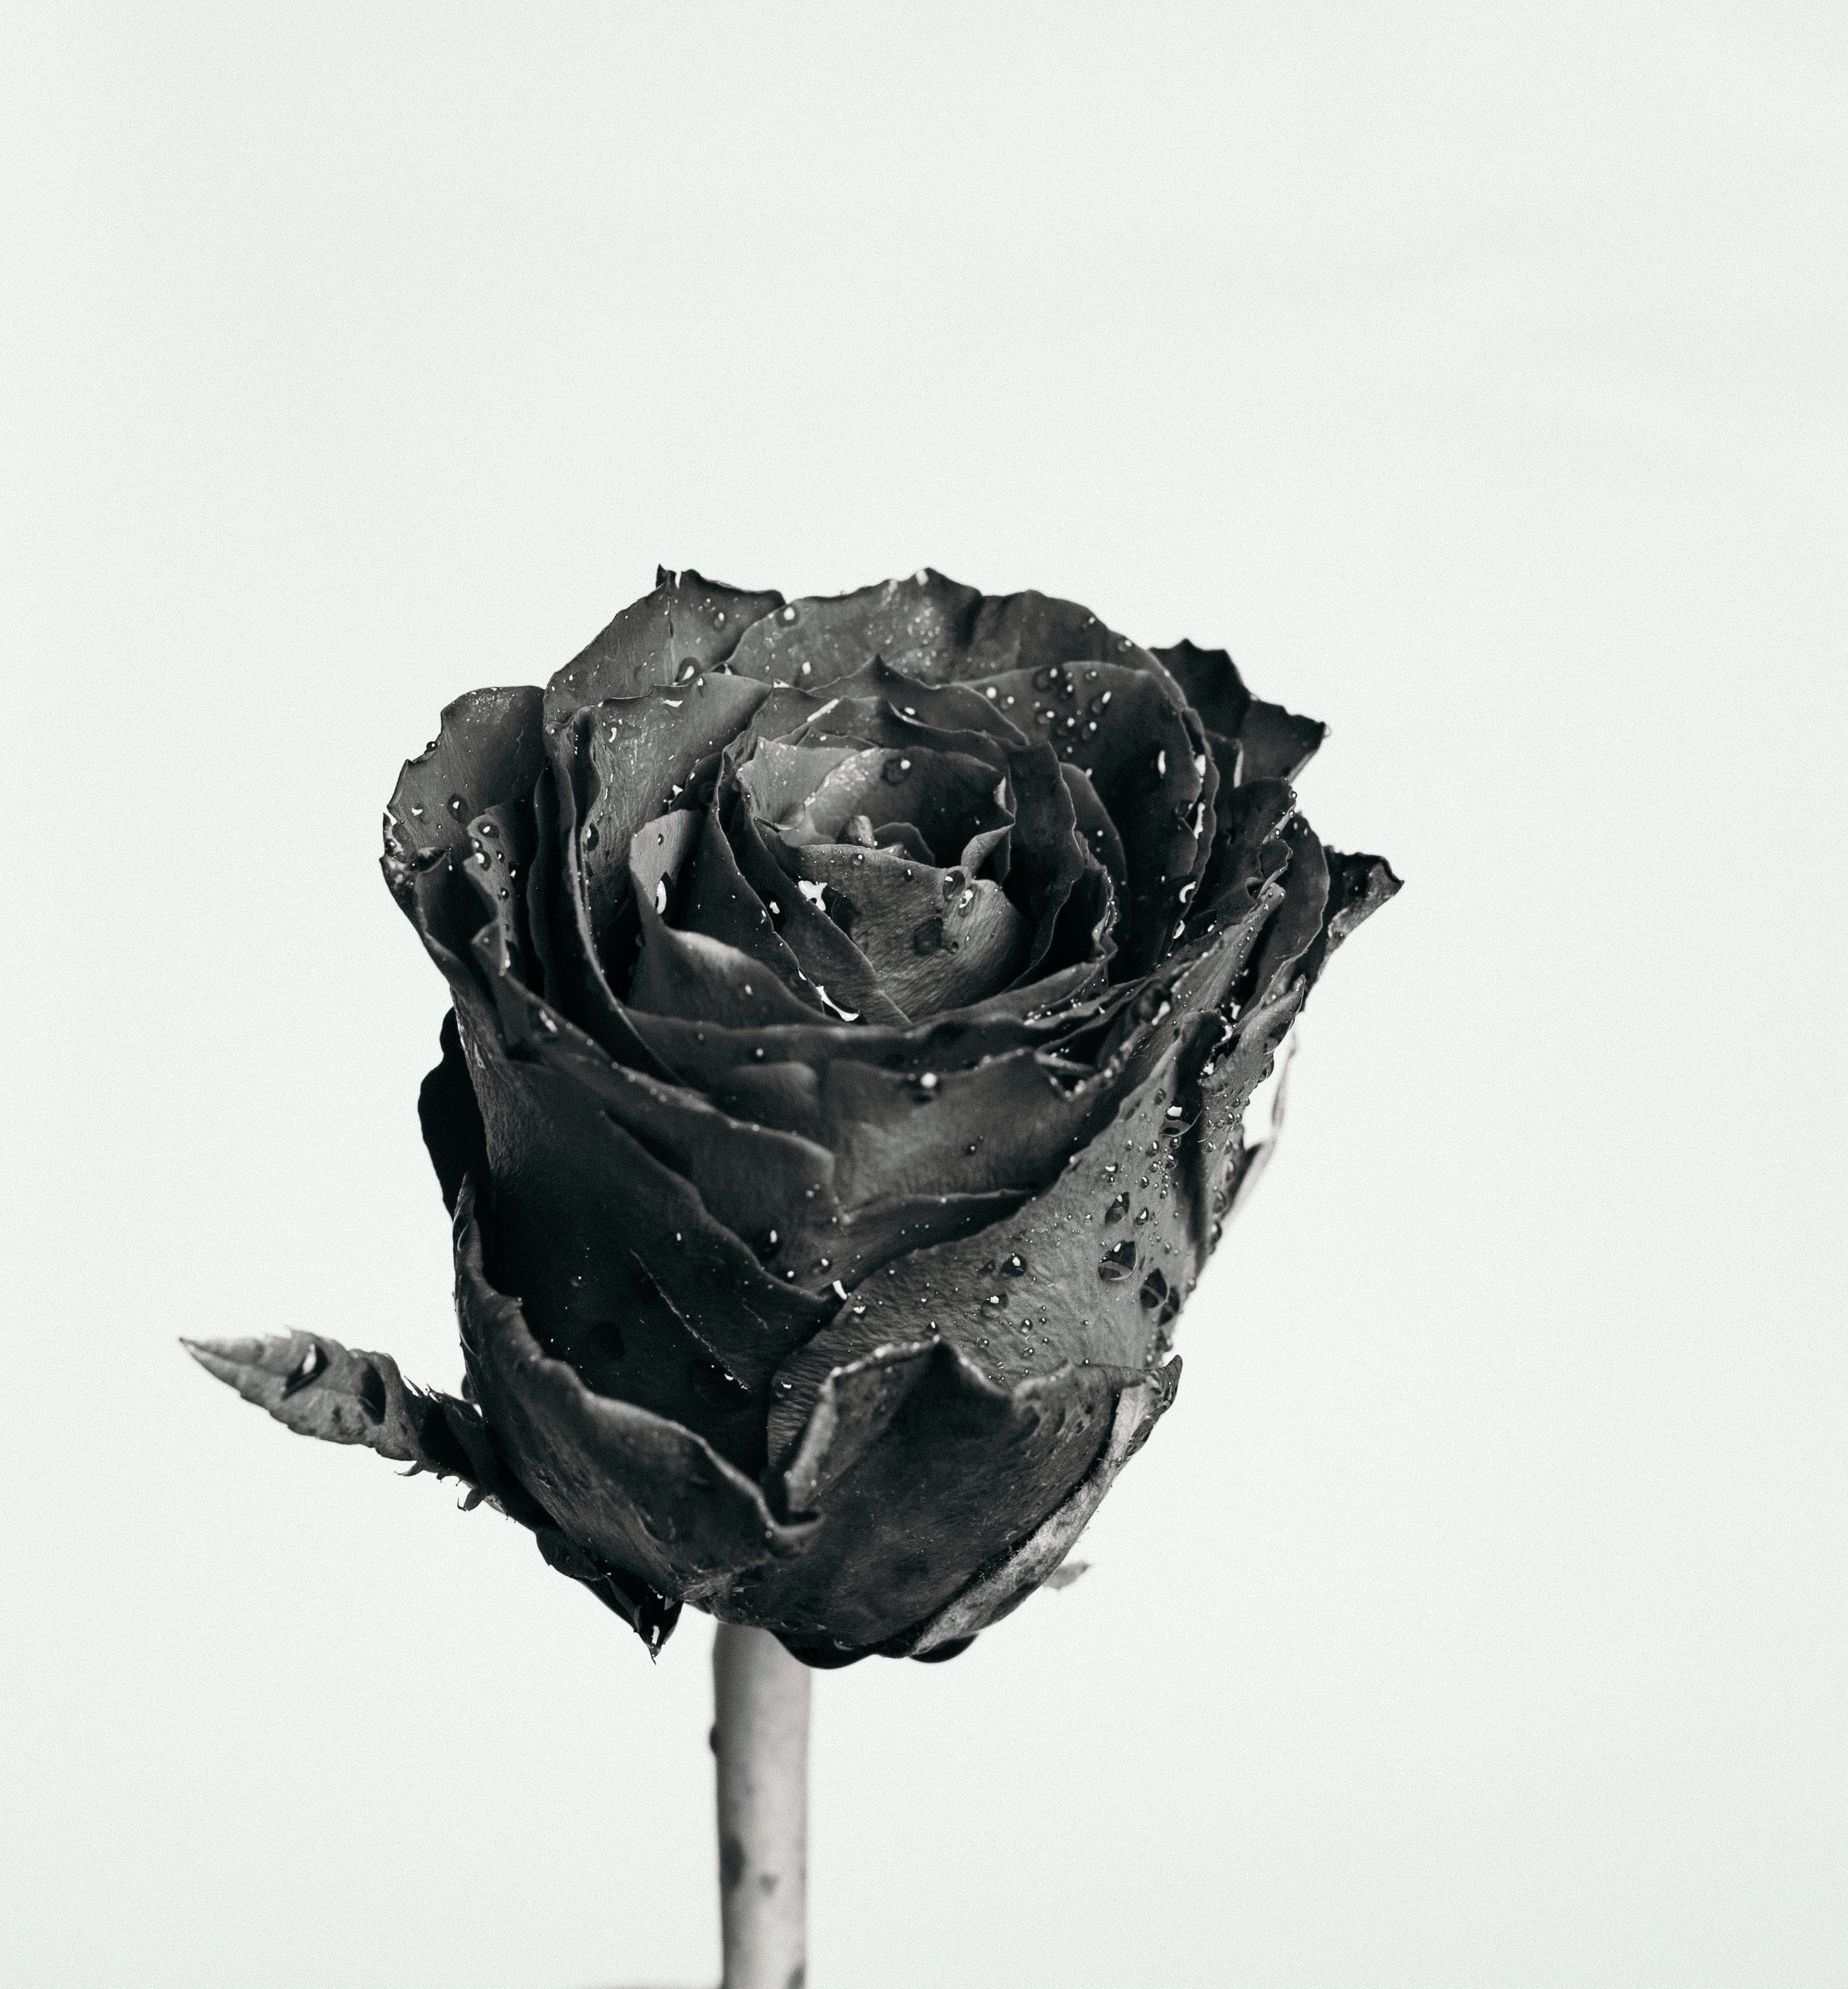  Schwarze Rosen Hintergrundbild 2931x3155. 200.Schwarze Rose Bilder Und Fotos · Kostenlos Downloaden · Stock Fotos